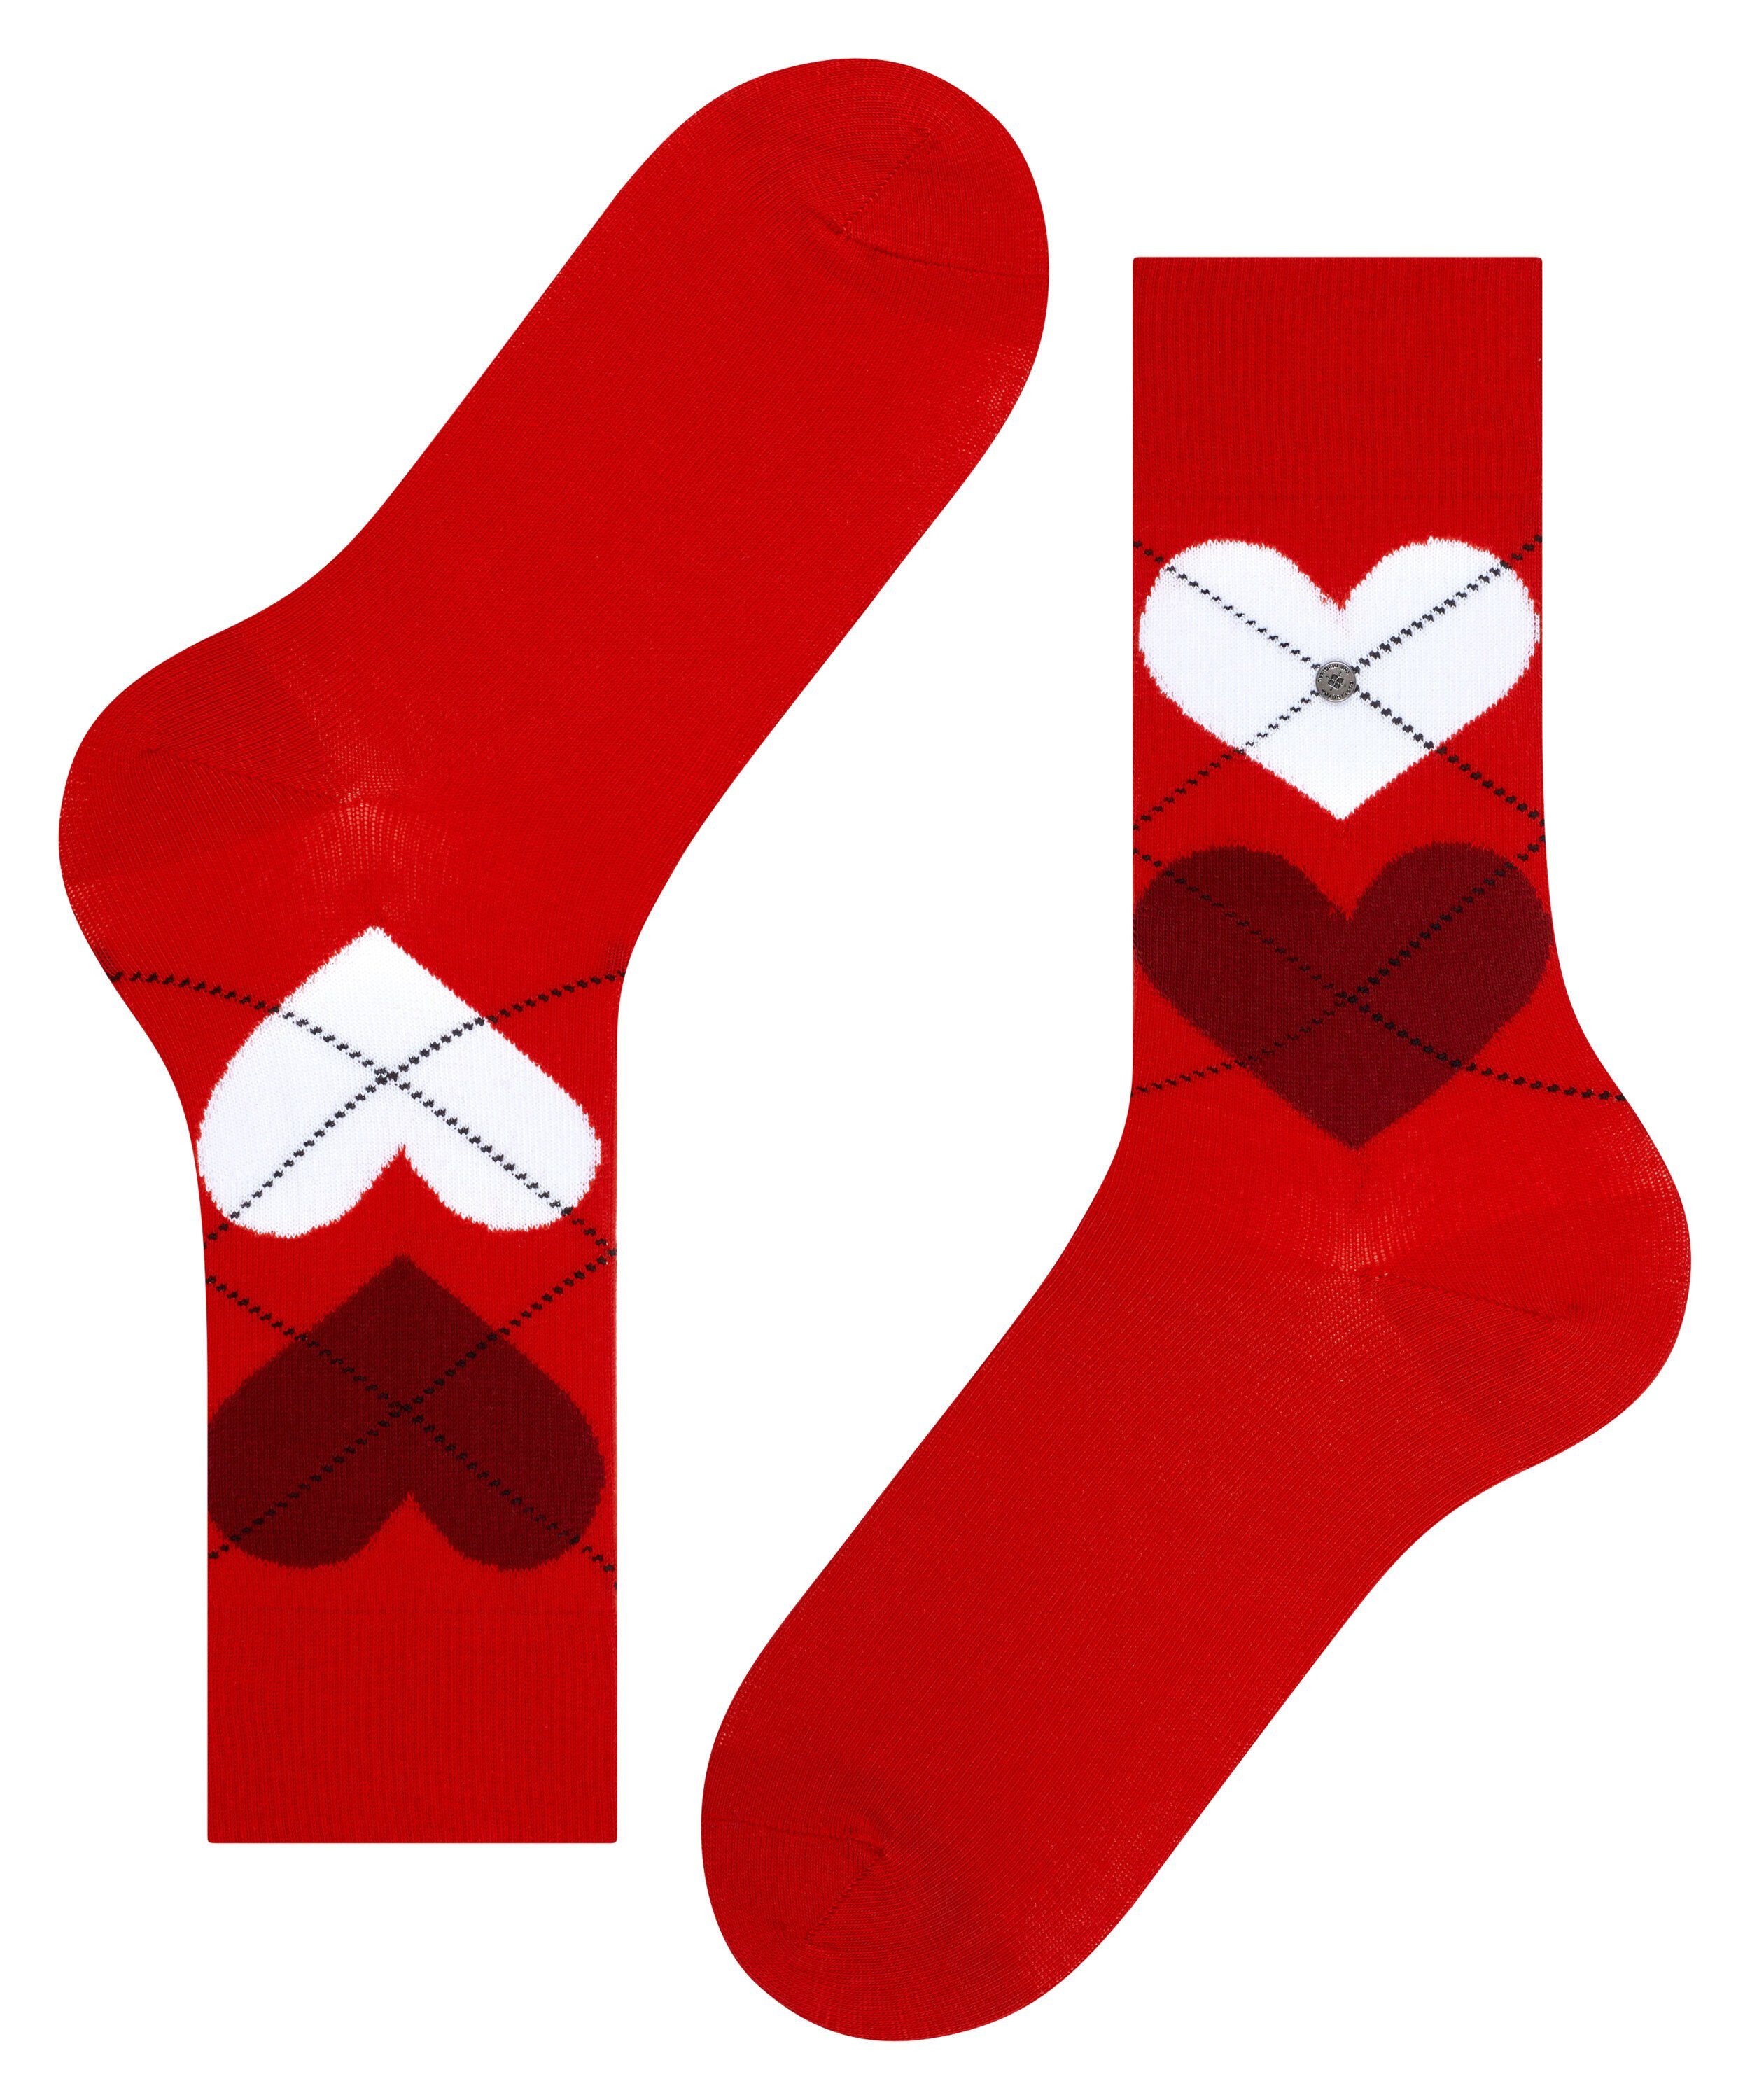 Wäsche/Bademode Socken Burlington Socken Soulmate (1-Paar) One size fits all (Gr. 40-46)